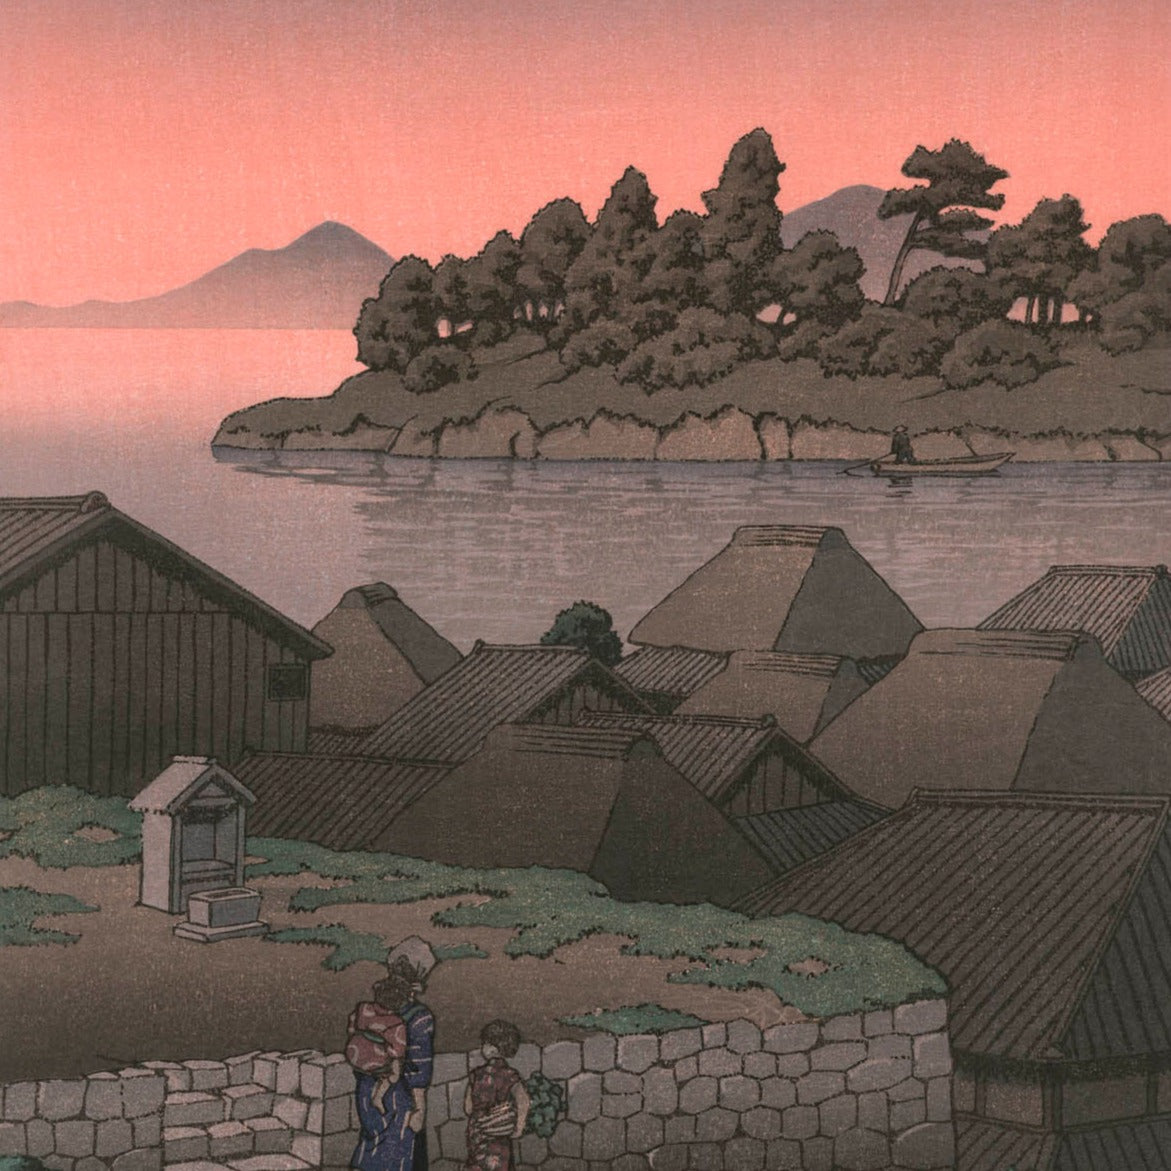 estampe japonaise paysage lever de soleil sur lac avec village et deux personnage au premier plan